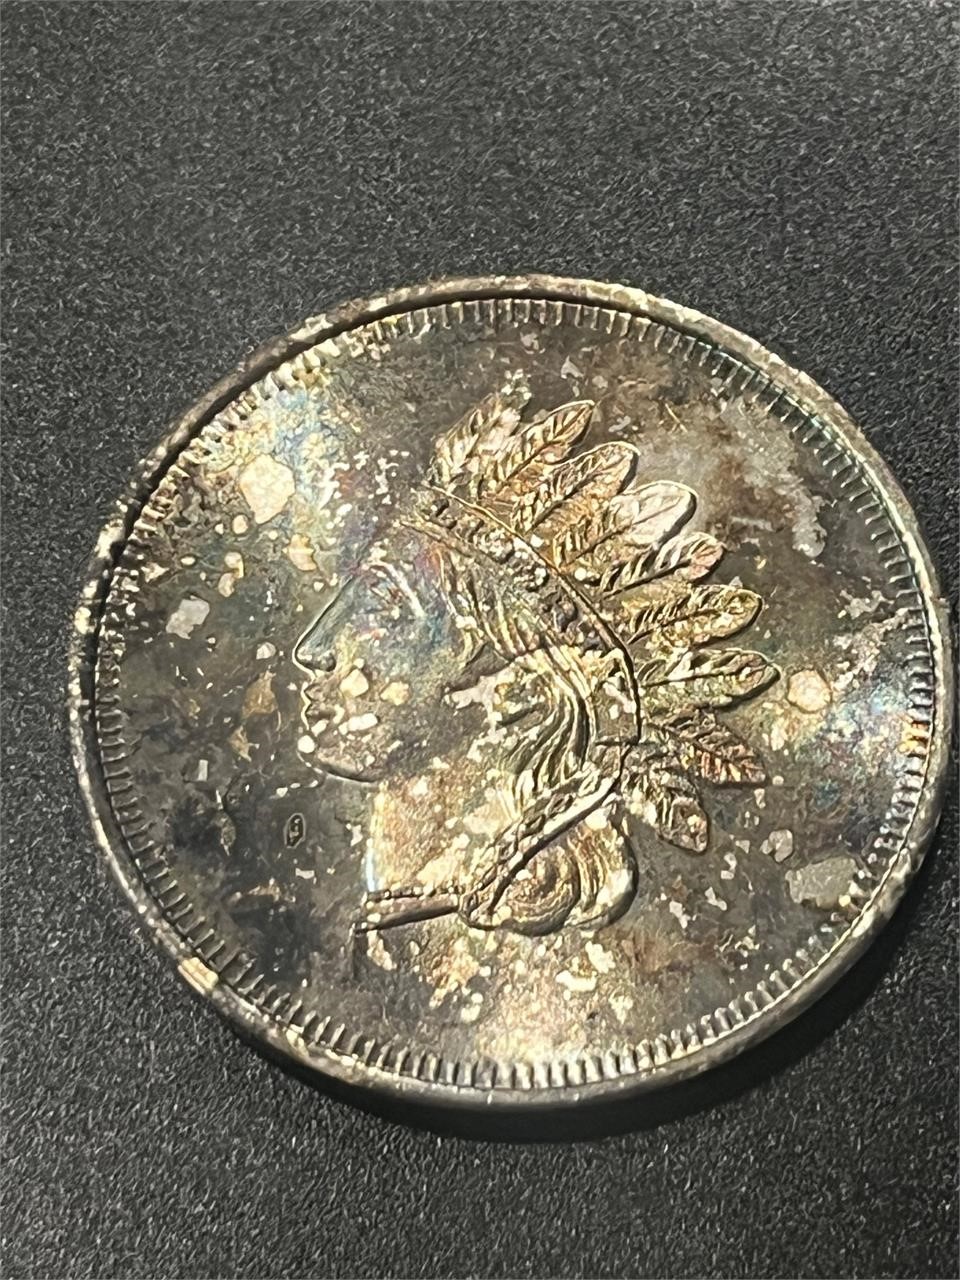 Indian Head 1 Oz Silver Coin